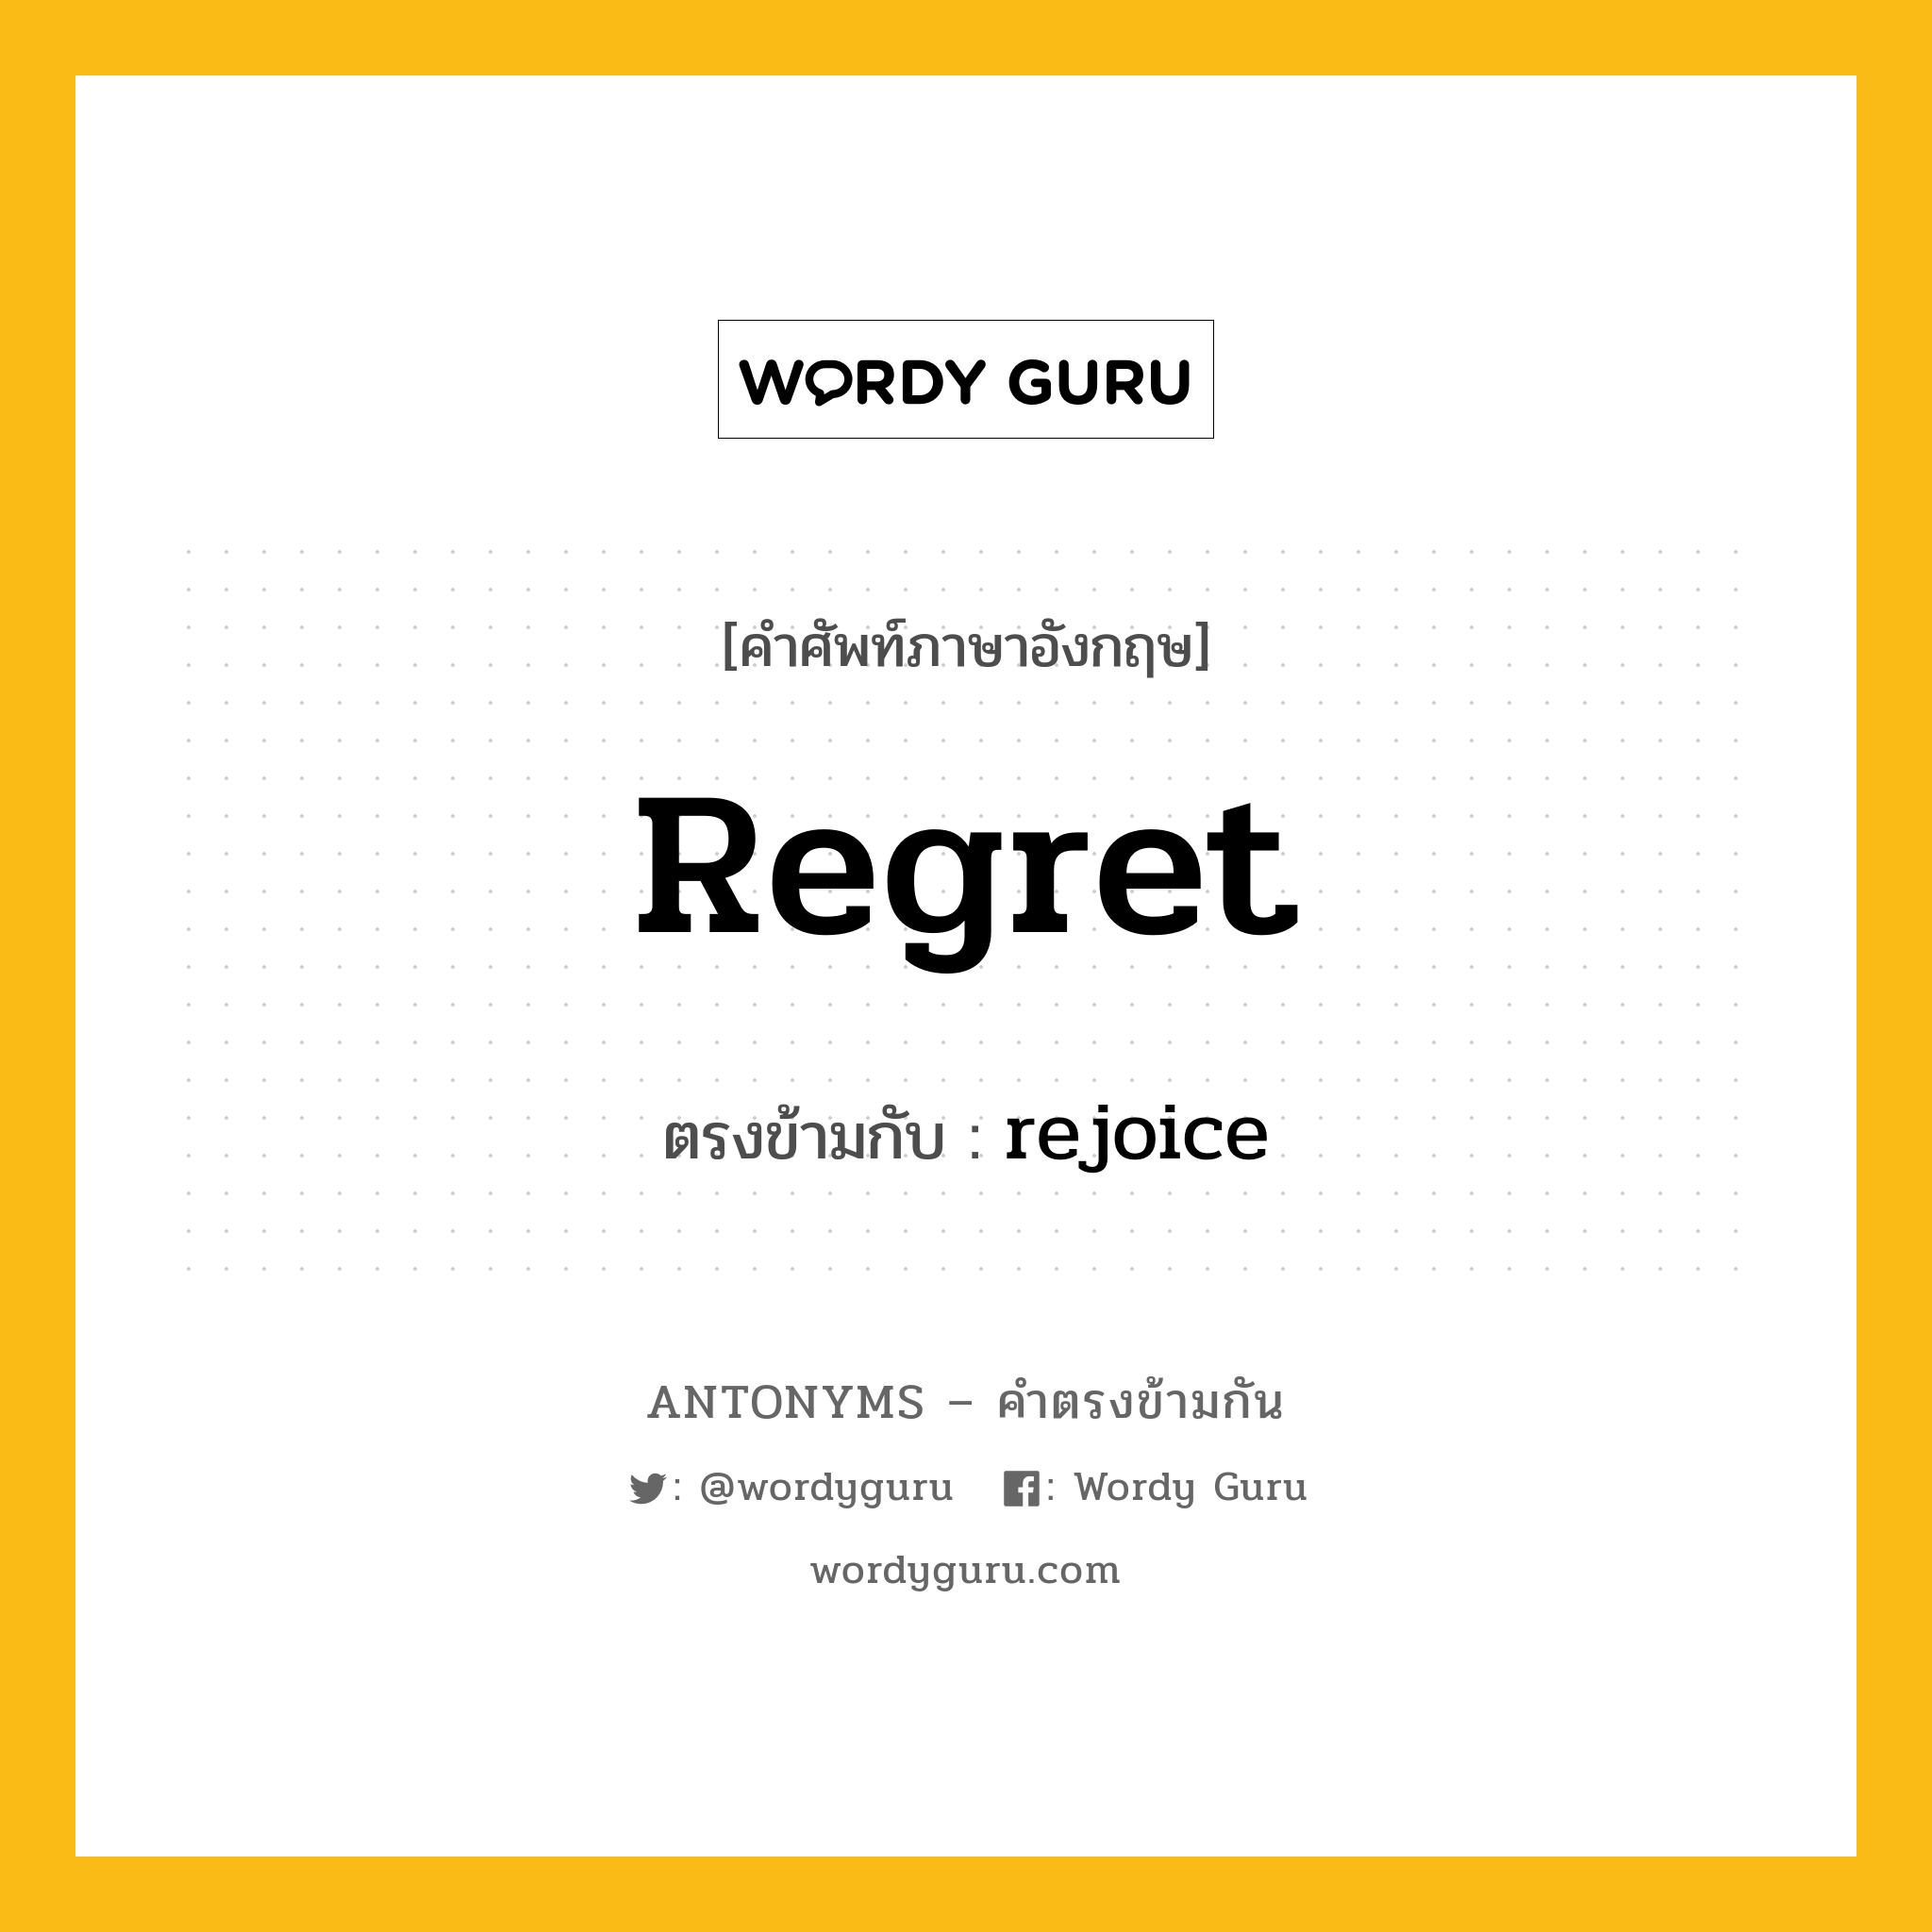 regret เป็นคำตรงข้ามกับคำไหนบ้าง?, คำศัพท์ภาษาอังกฤษ regret ตรงข้ามกับ rejoice หมวด rejoice